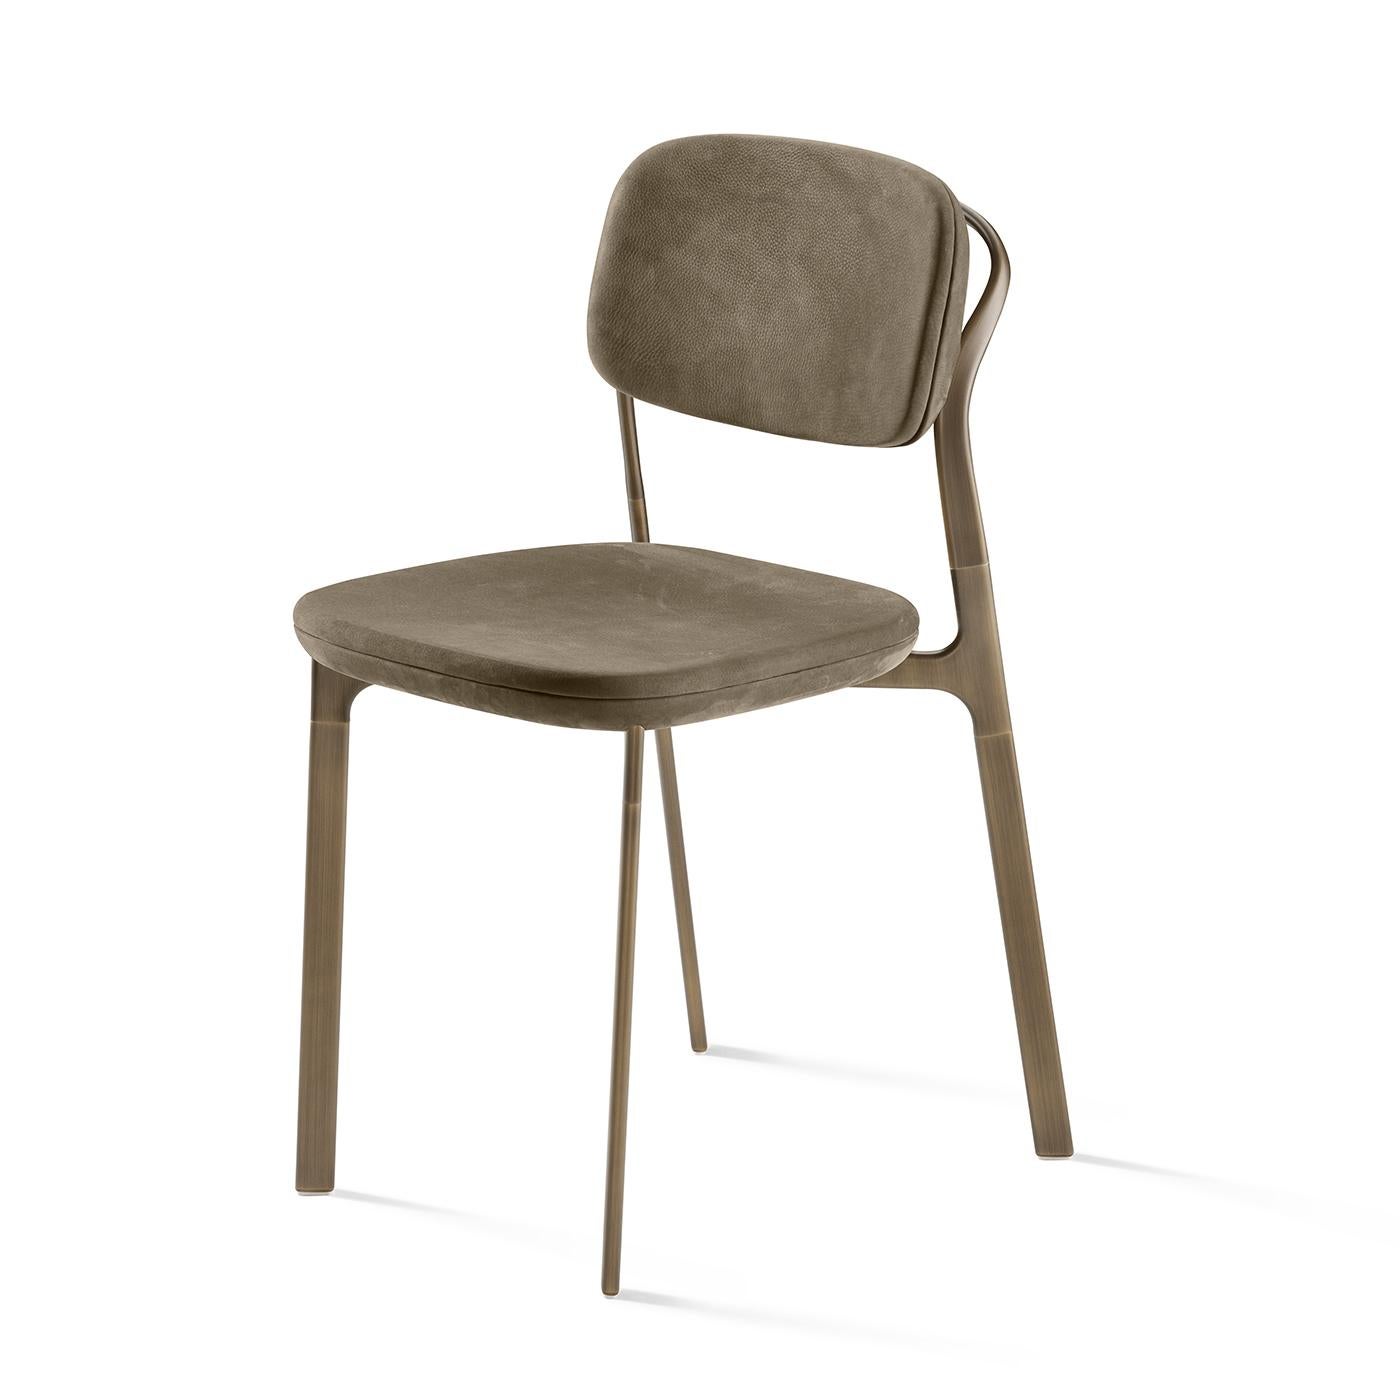 Inspirée par des lignes pures et classiques, cette chaise affiche un design moderne et élégant qui enrichira sans effort toute salle à manger lorsqu'elle sera disposée autour de la table avec d'autres chaises de la même série. Reposant sur une